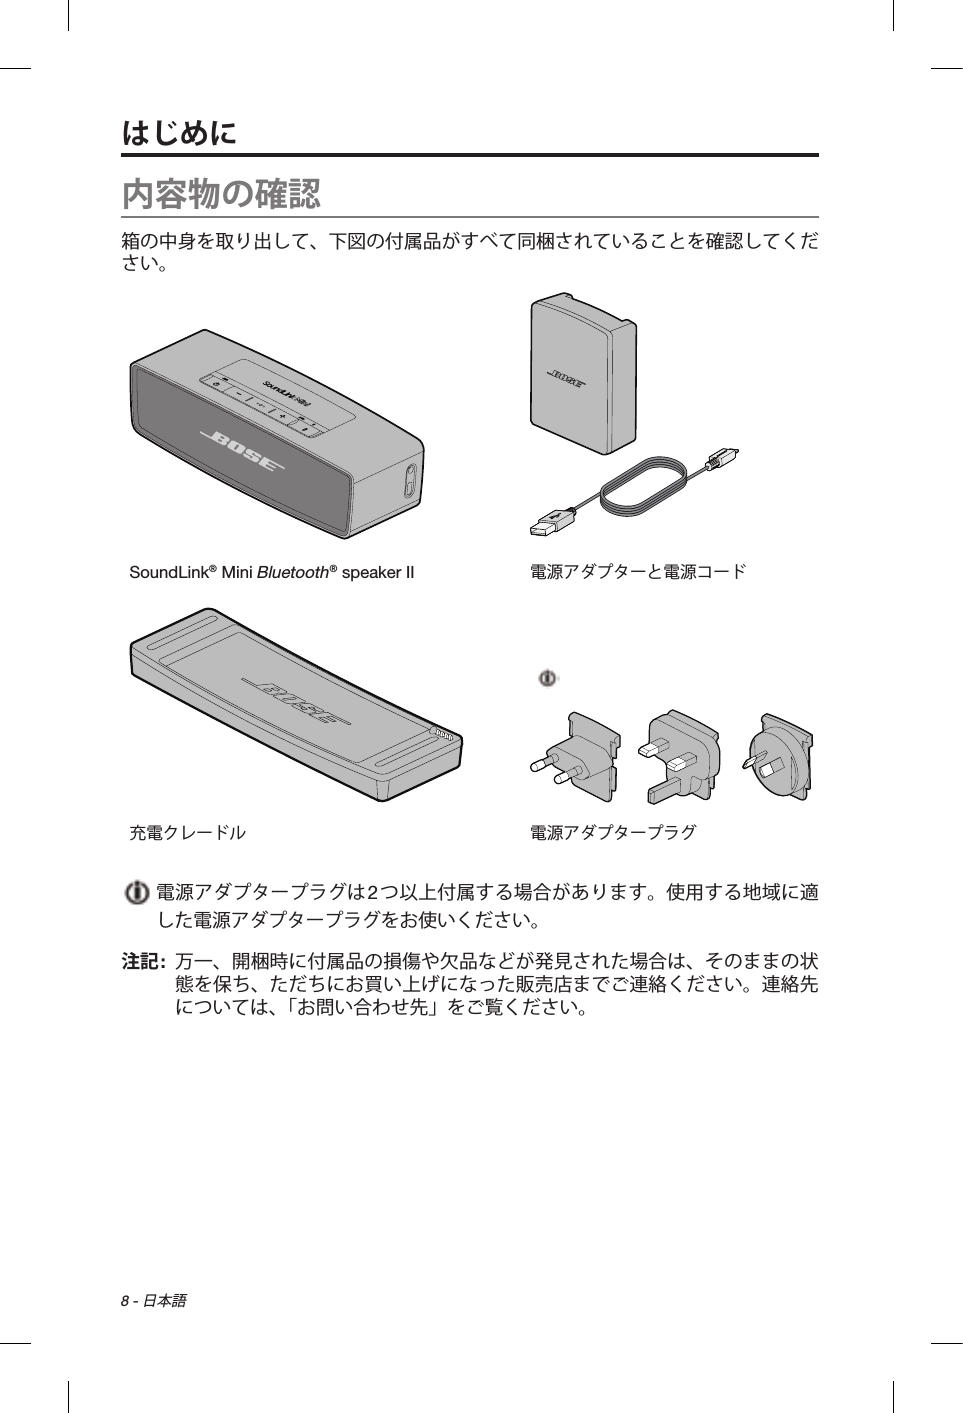 8 - 日本語内容物の確認箱の中身を取り出して、下図の付属品がすべて同梱されていることを確認してください。SoundLink® Mini Bluetooth® speaker II 電源アダプターと電源コード充電クレードル 電源アダプタープラグ  電源アダプタープラグは2つ以上付属する場合があります。使用する地域に適した電源アダプタープラグをお使いください。注記:   万一、開梱時に付属品の損傷や欠品などが発見された場合は、そのままの状態を保ち、ただちにお買い上げになった販売店までご連絡ください。連絡先については、「お問い合わせ先」をご覧ください。はじめに